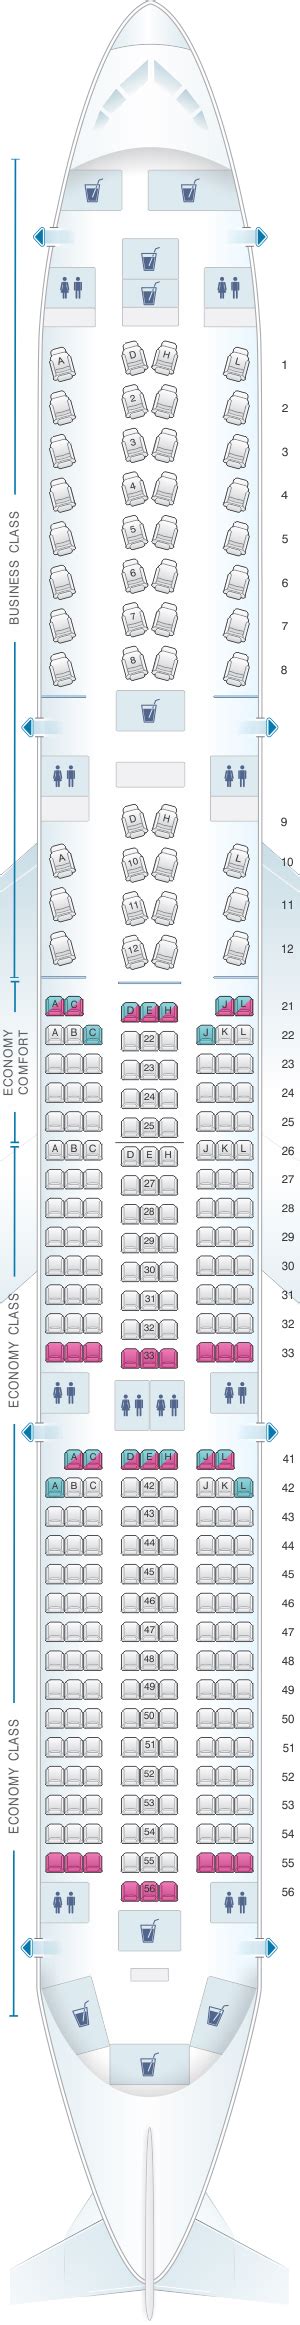 Seat Map Finnair Airbus A350 900